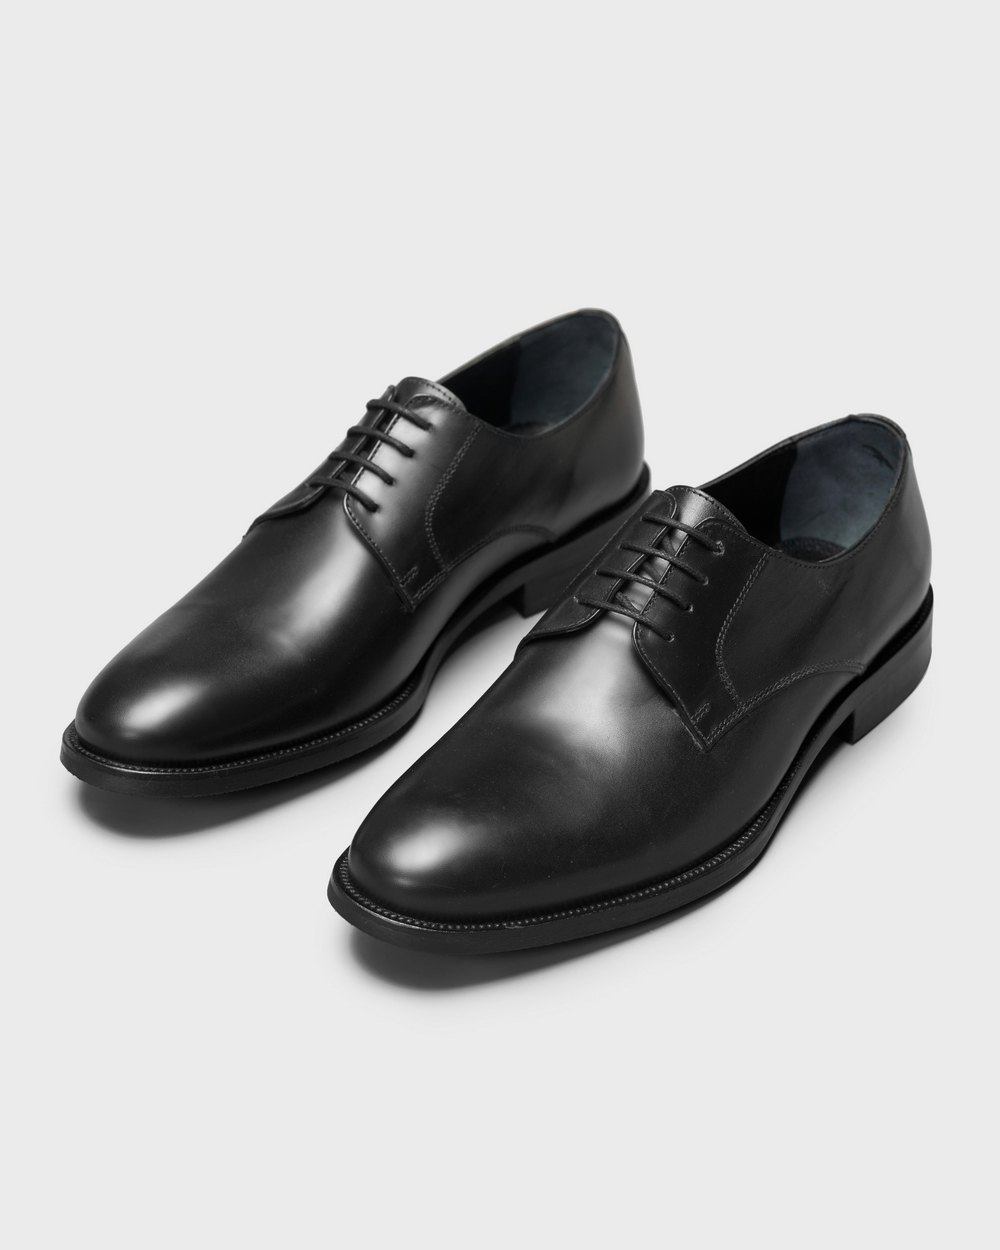 Туфли мужские дерби классические черные на каучуковой подошве